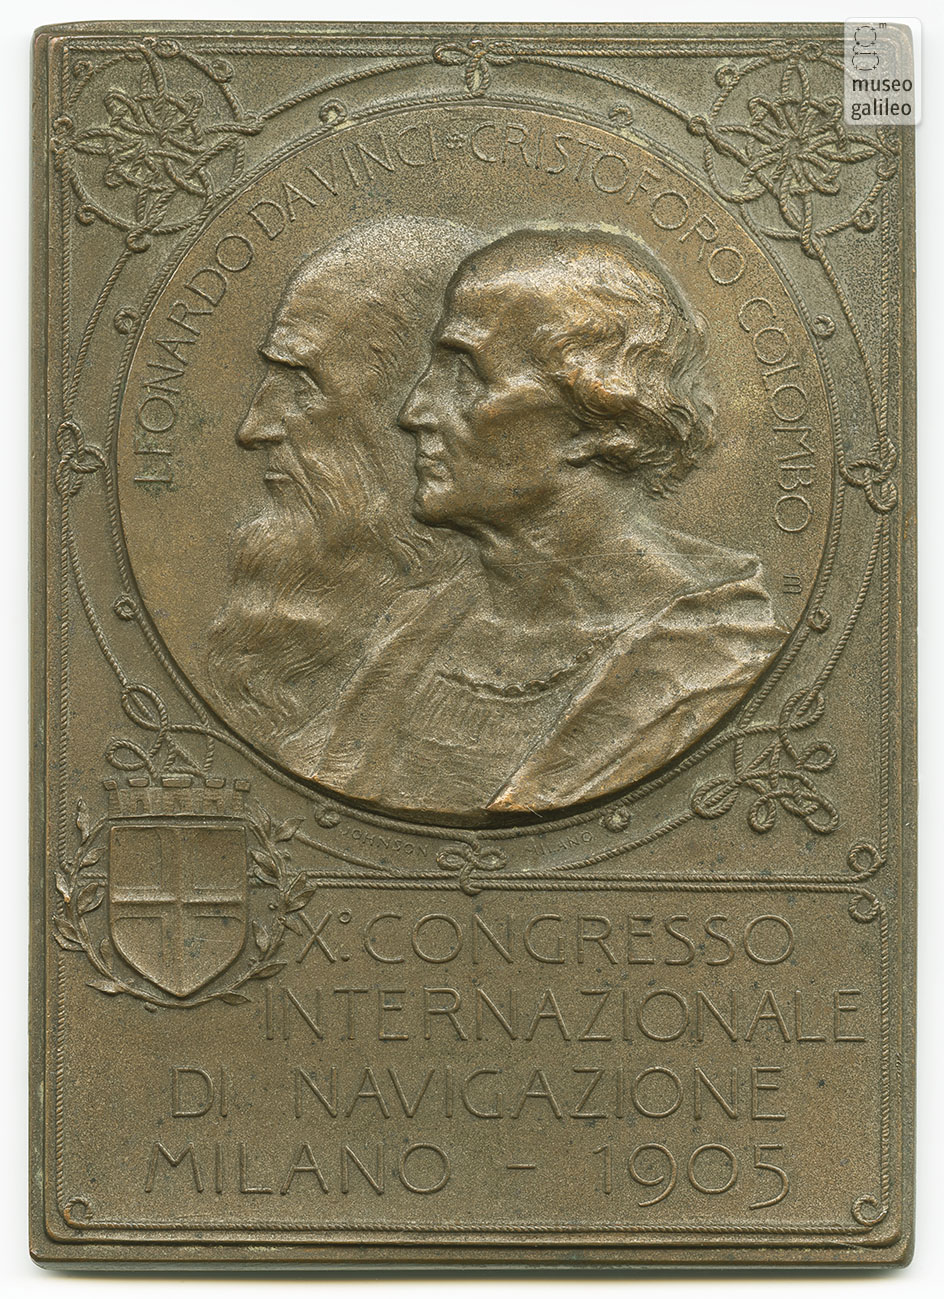 Congresso Internazionale di Navigazione (Milano, 1905) - obverse